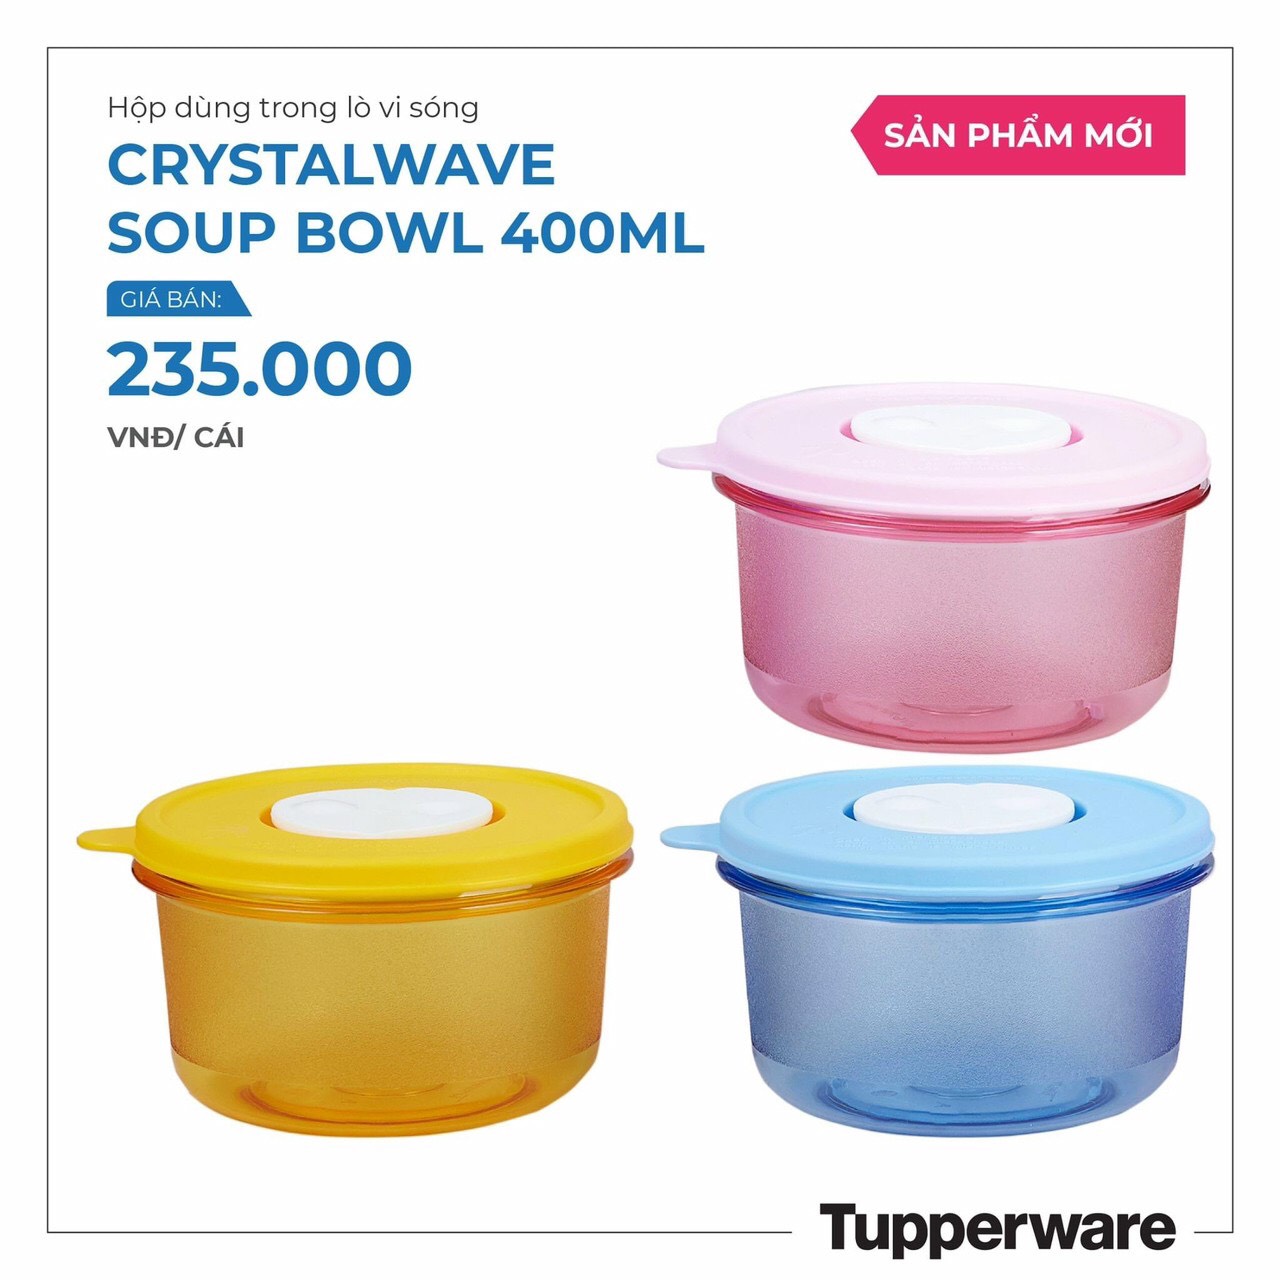 Hộp dùng trong lò vi sóng Crystalwave Soup Bowl